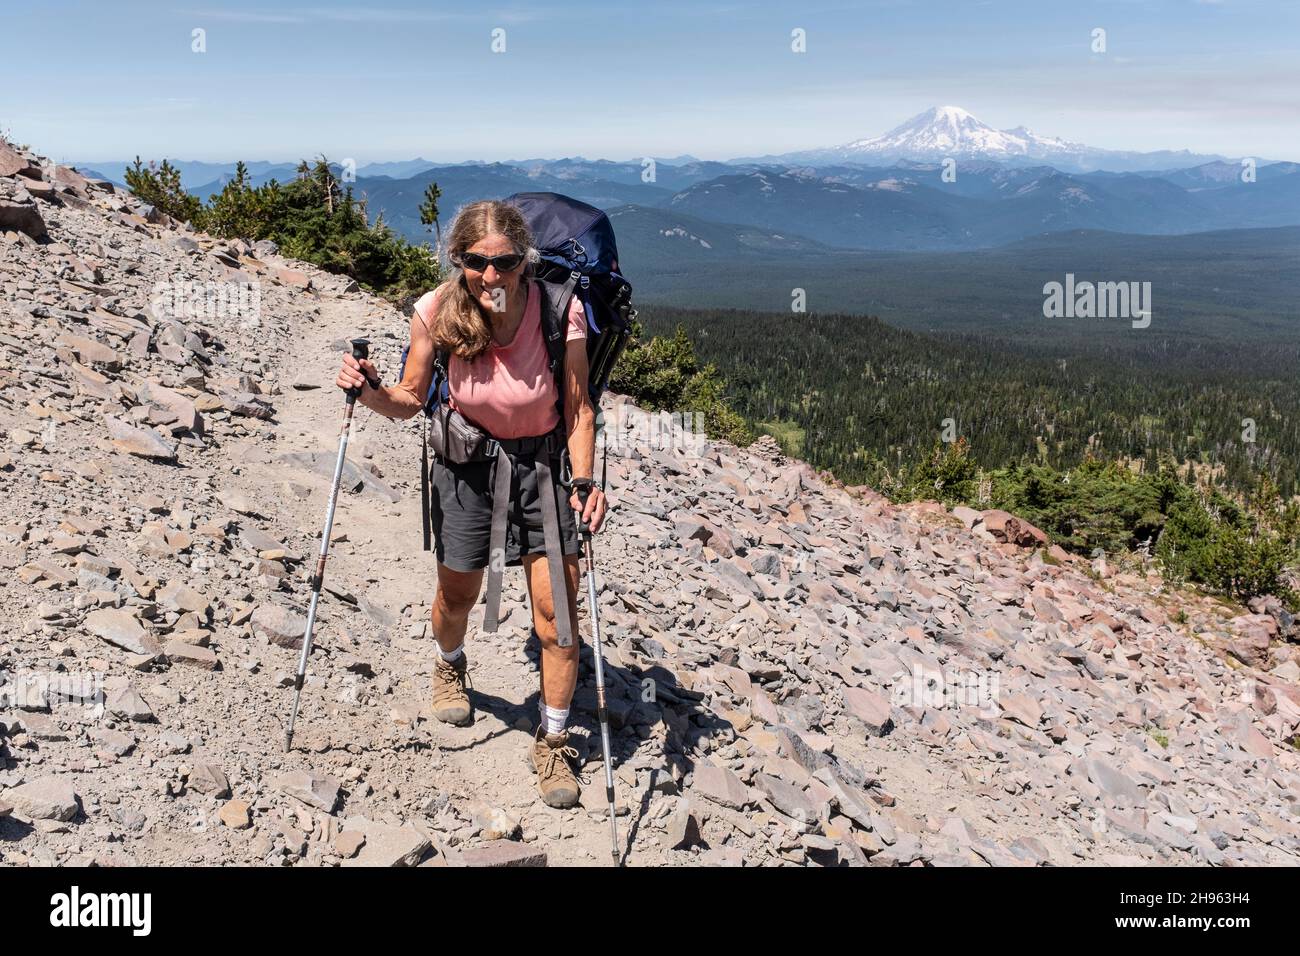 WA20471-00....WASHINGTON - Vicky Spring randonnée près de High Camp dans la nature sauvage de Mount Adams avec Mount Rainier au loin. Banque D'Images